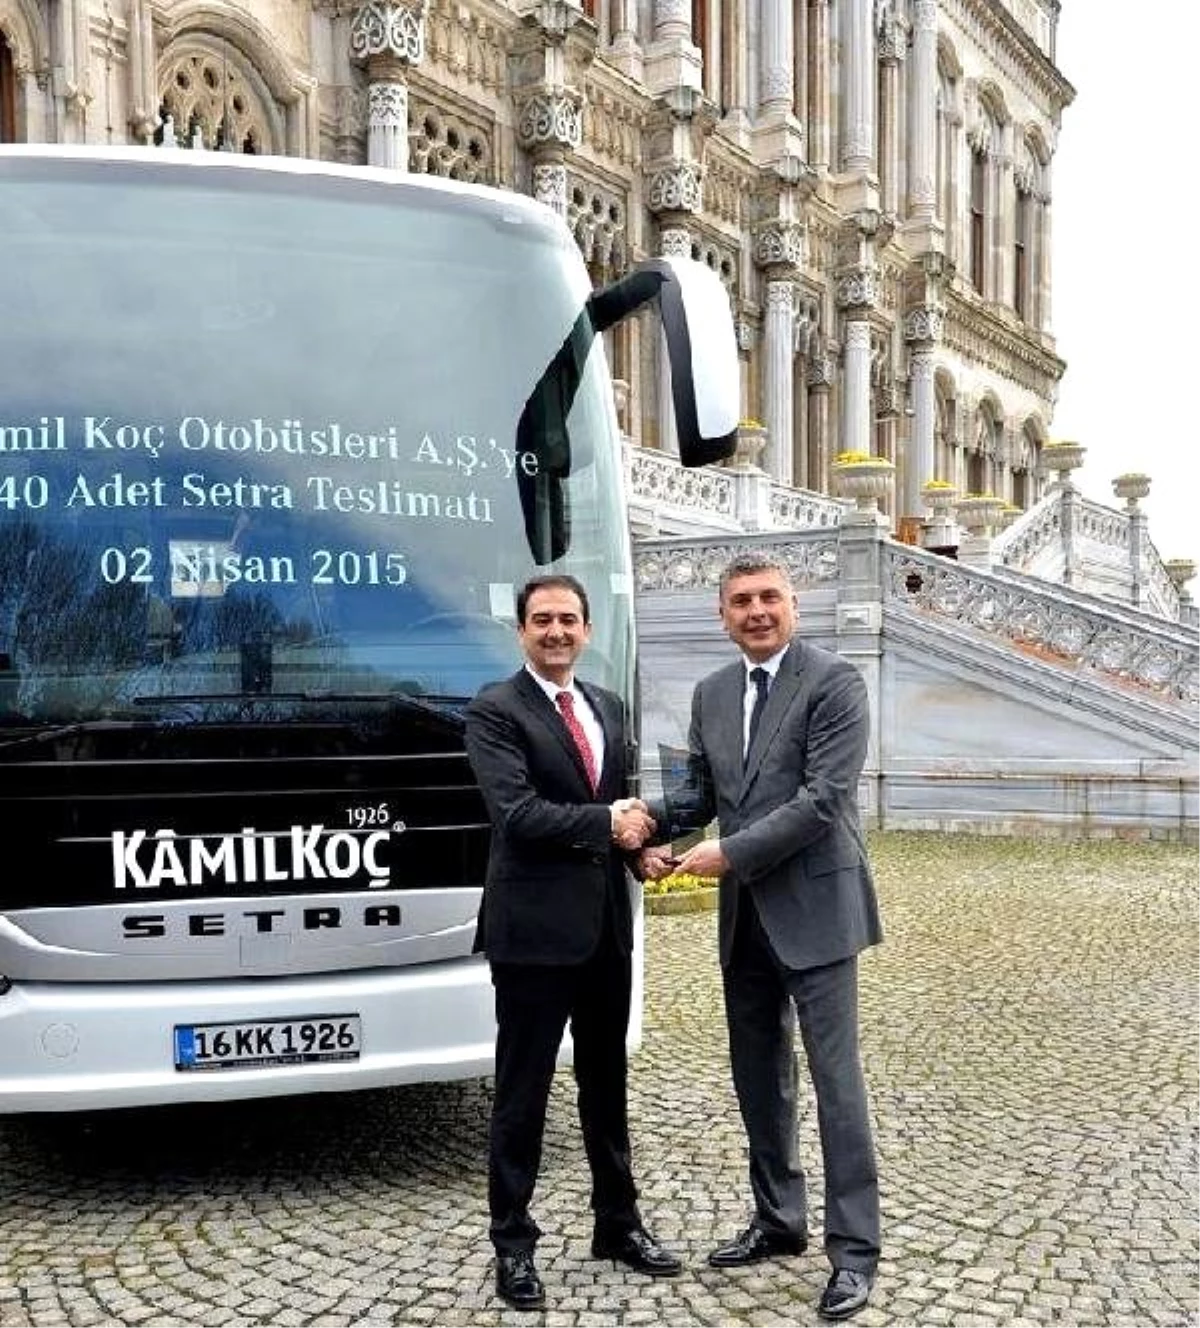 Mercedes-Benz Türk ve Kamil Koç 35 Milyon Liralık Anlaşma İmzaladı